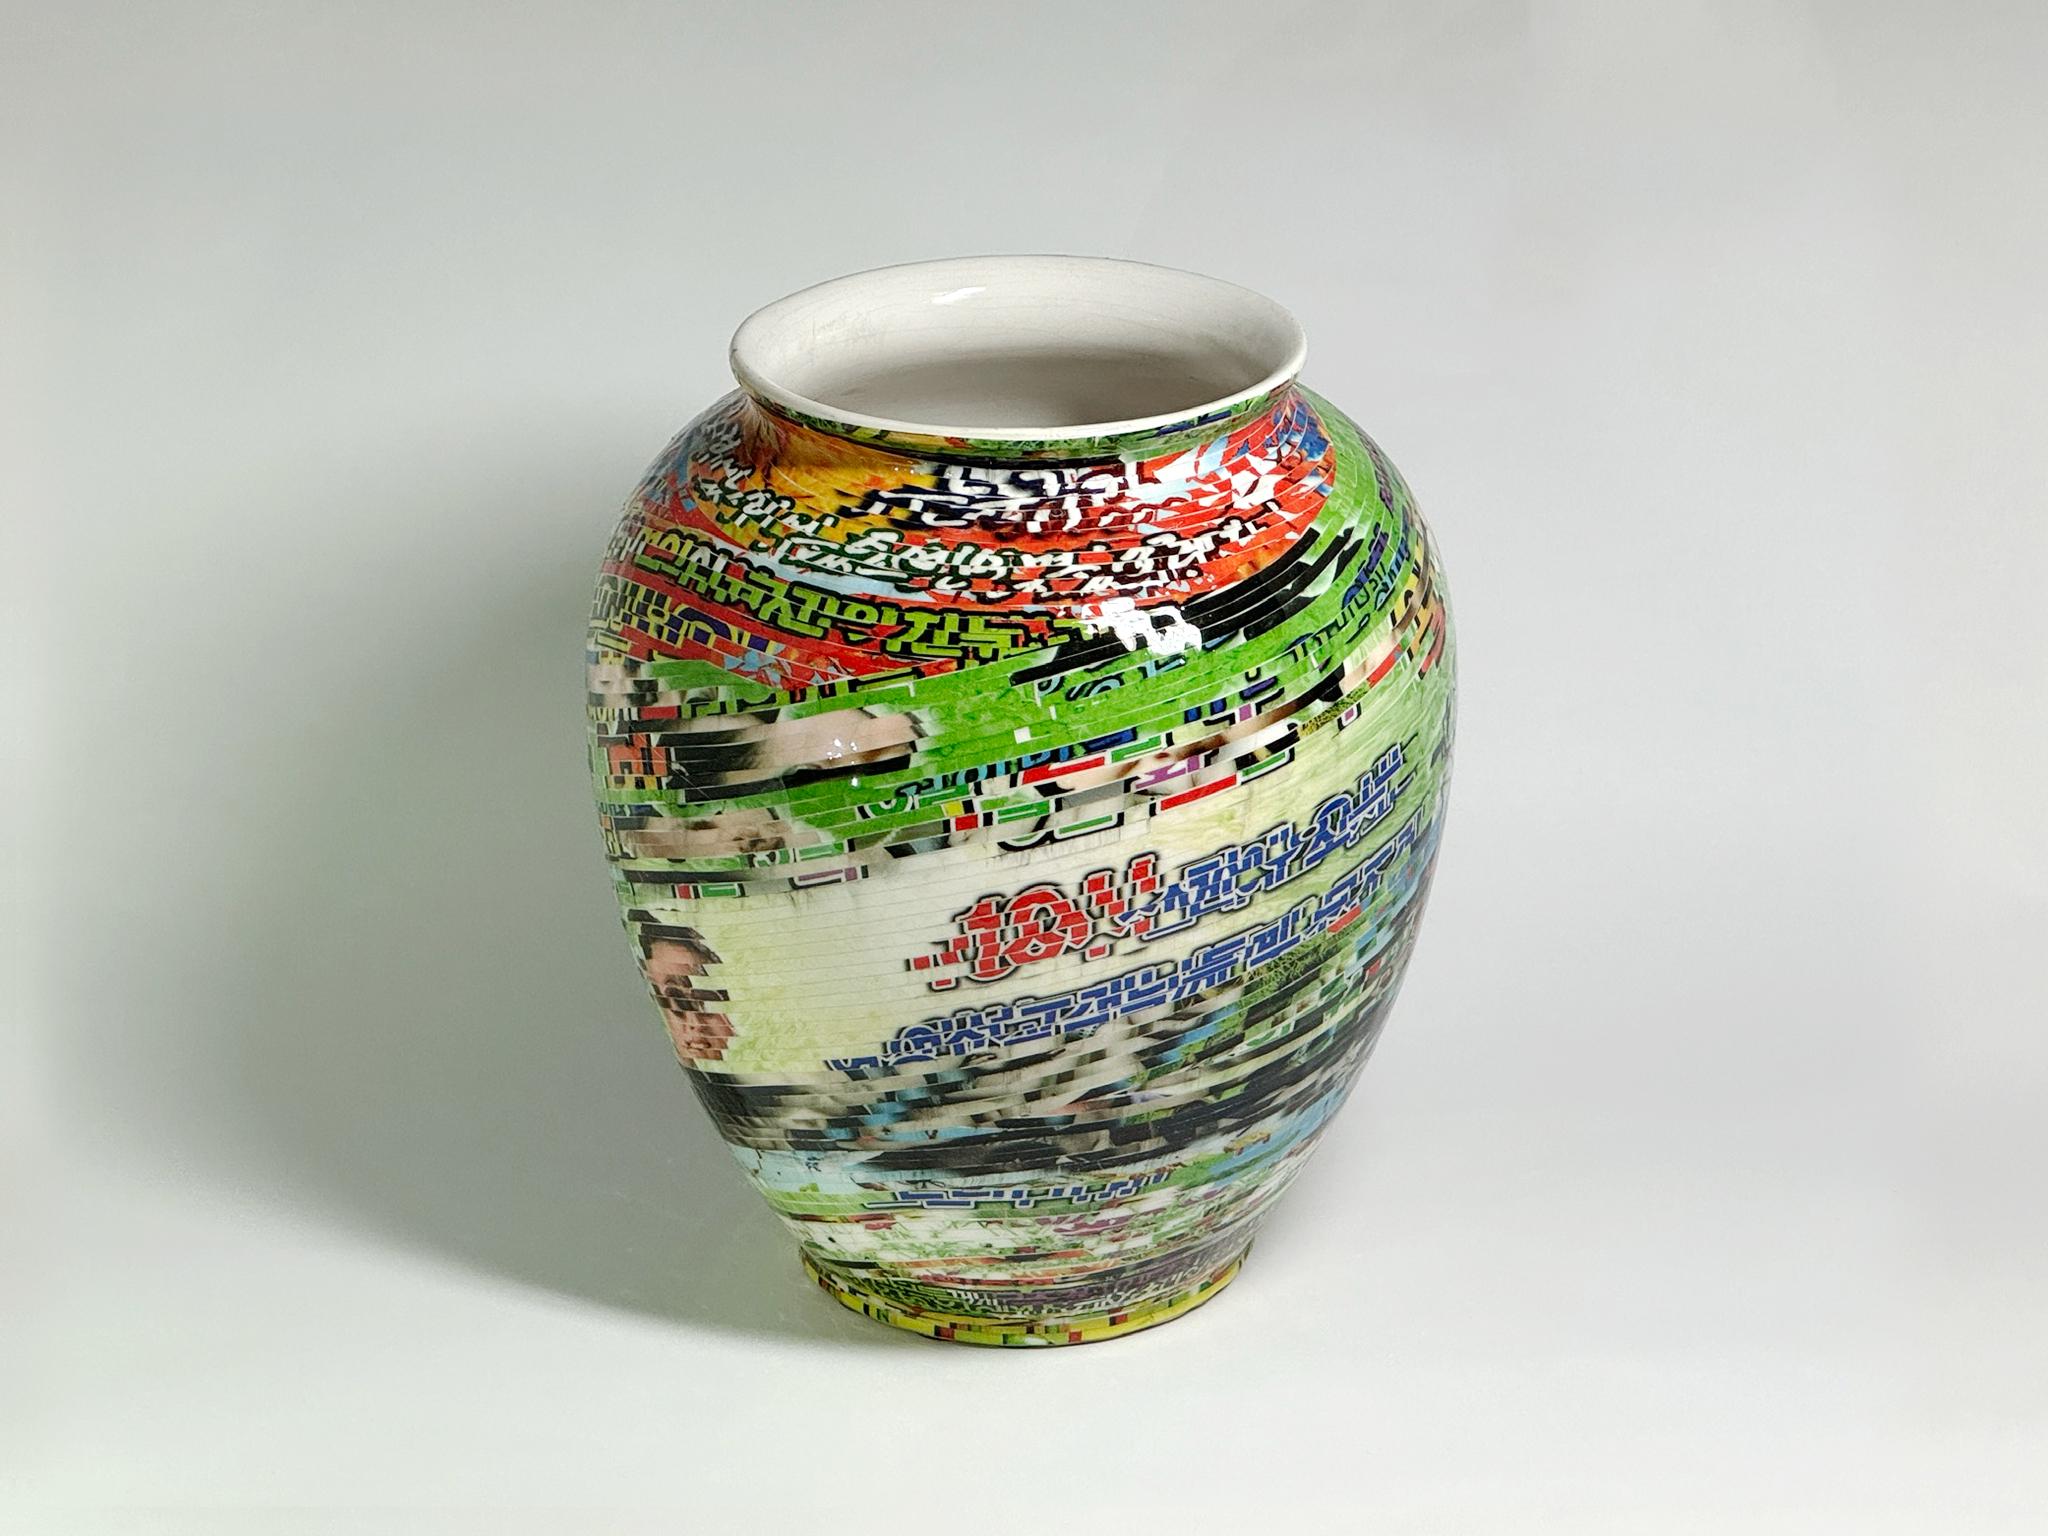 Jjirasi-Vase #01, 2023 von Yongwon Noh
Aus der Serie Jjirasi 
Keramik, PVC-Aufkleber und Harz
Größe: 9 in. H x 7.8 in. W x 7.8 in. D
Gewicht: 3kg Unverpackt
Einzigartiges Stück
Signatur auf dem Boden der Vase

Jjirasi Vase erforscht die miteinander